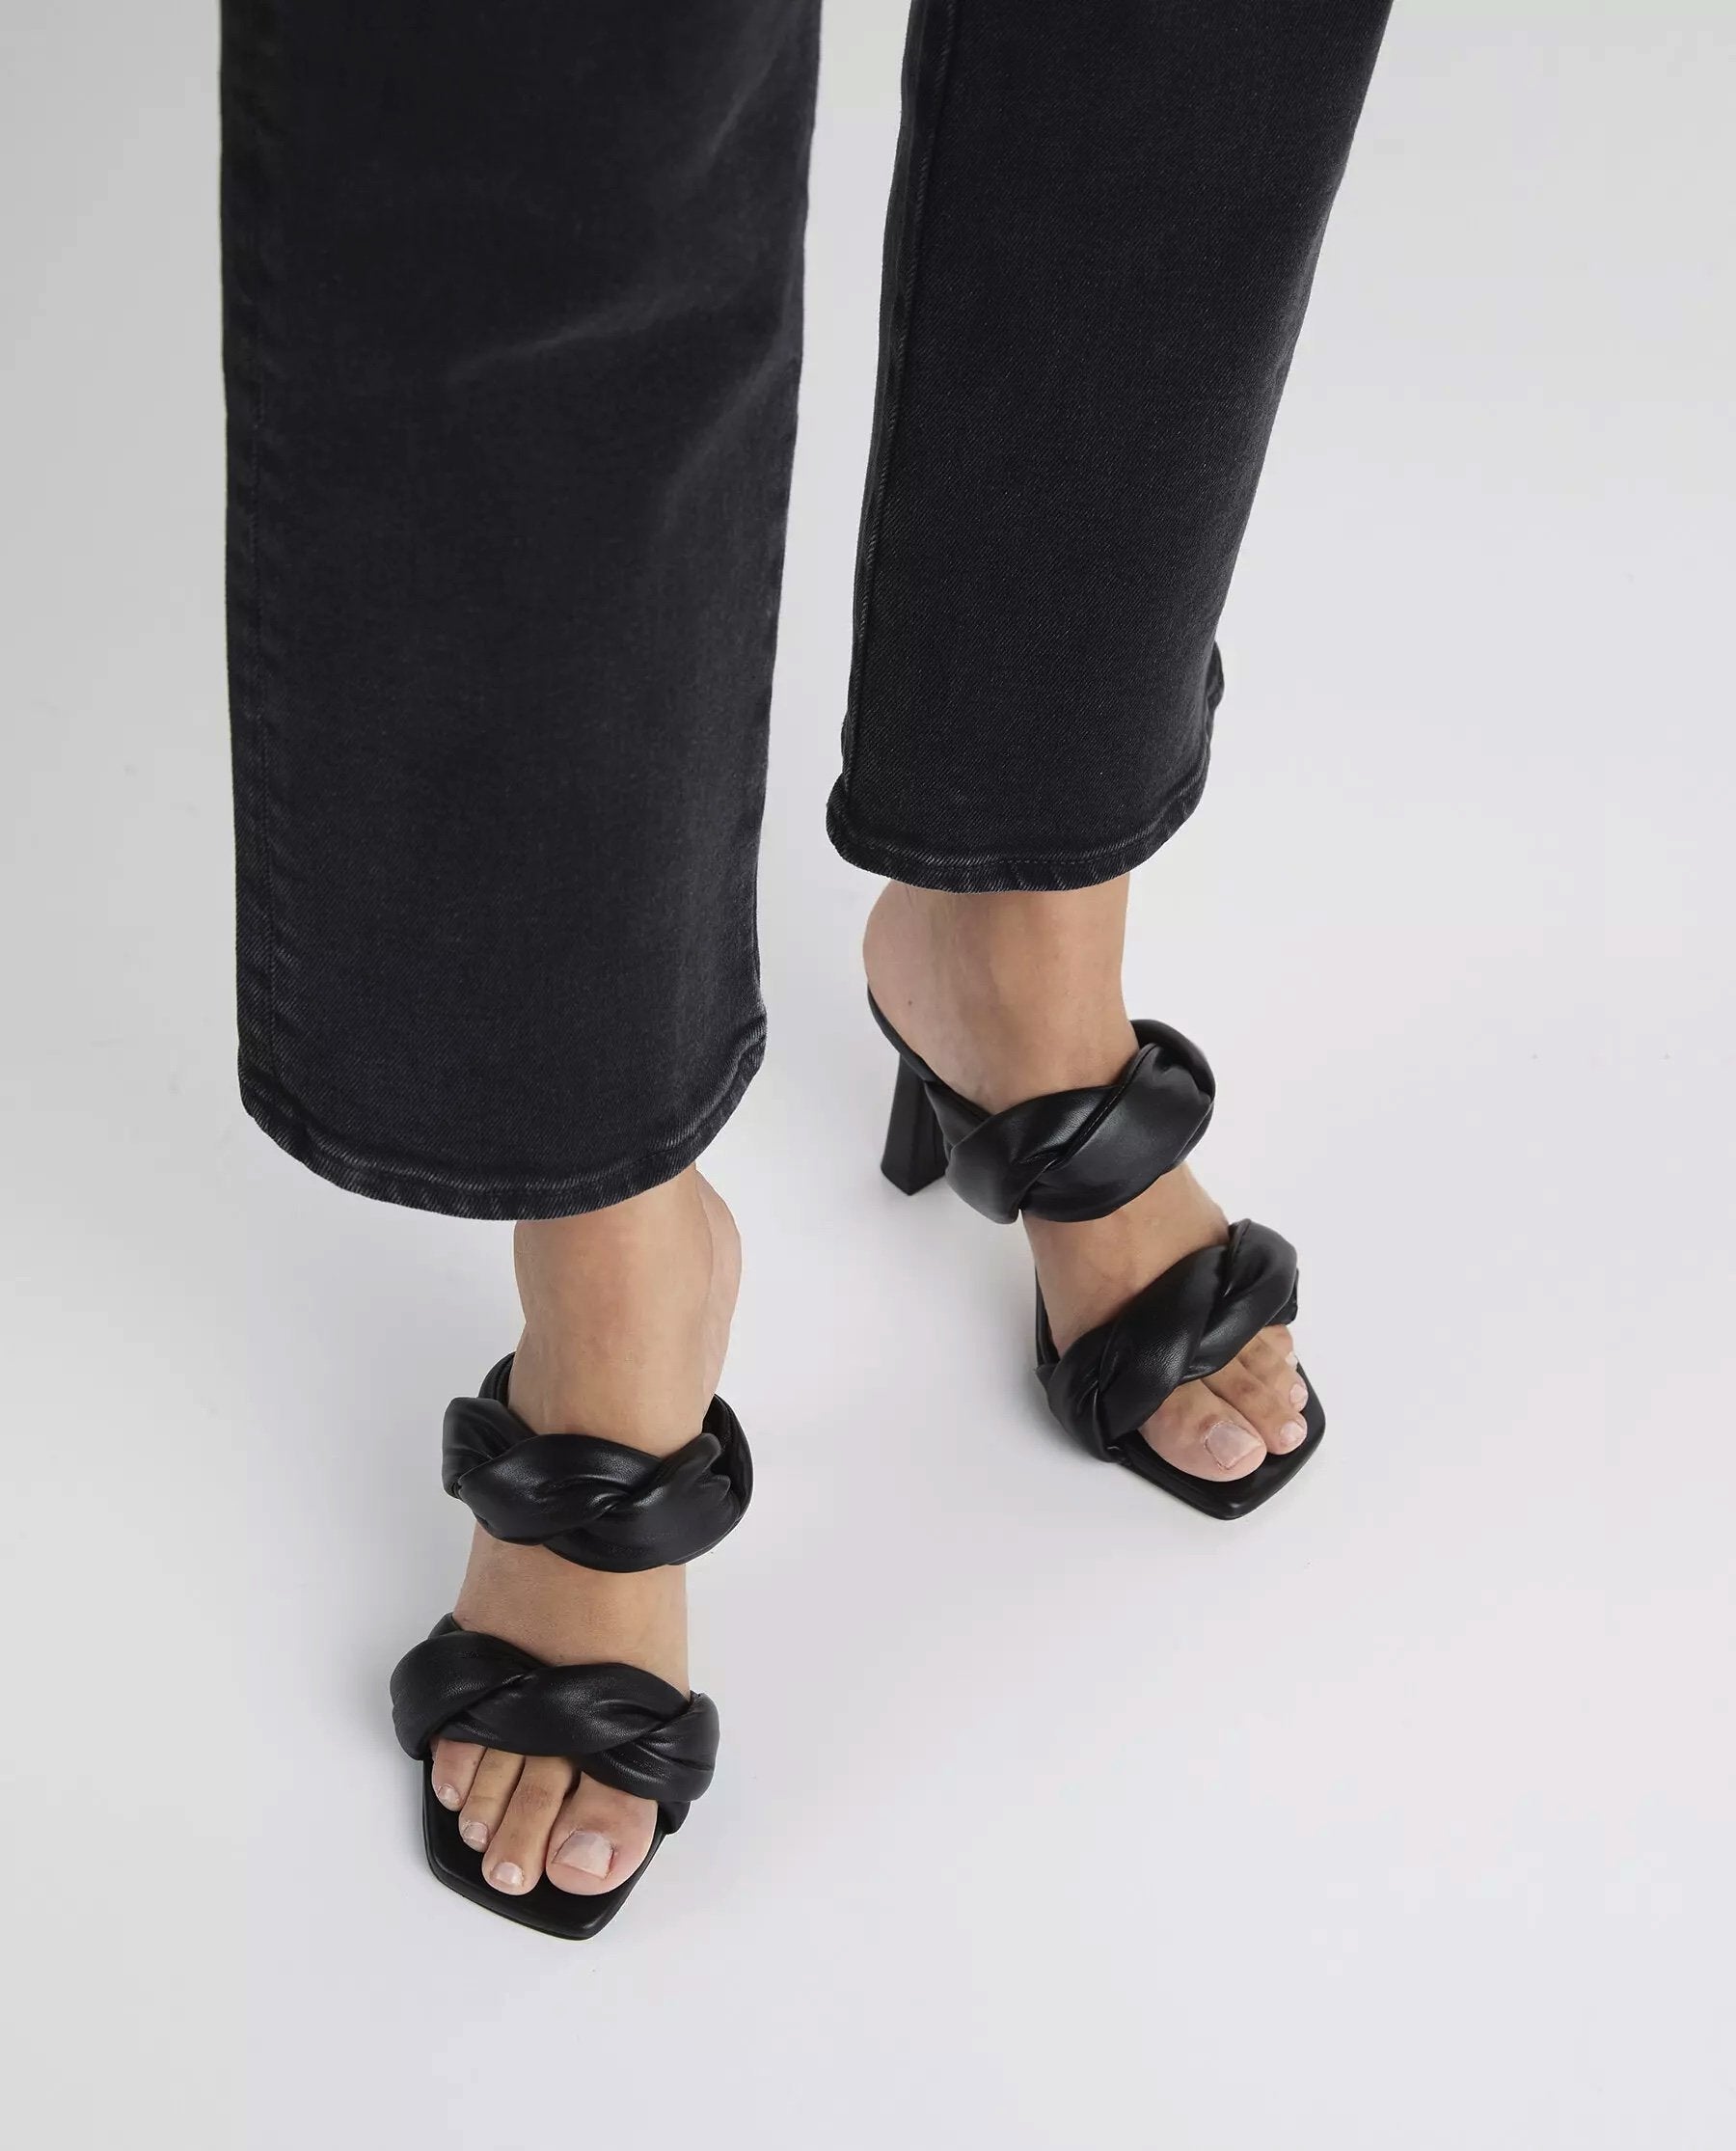 River Leather Black Heeled Sandals - 2